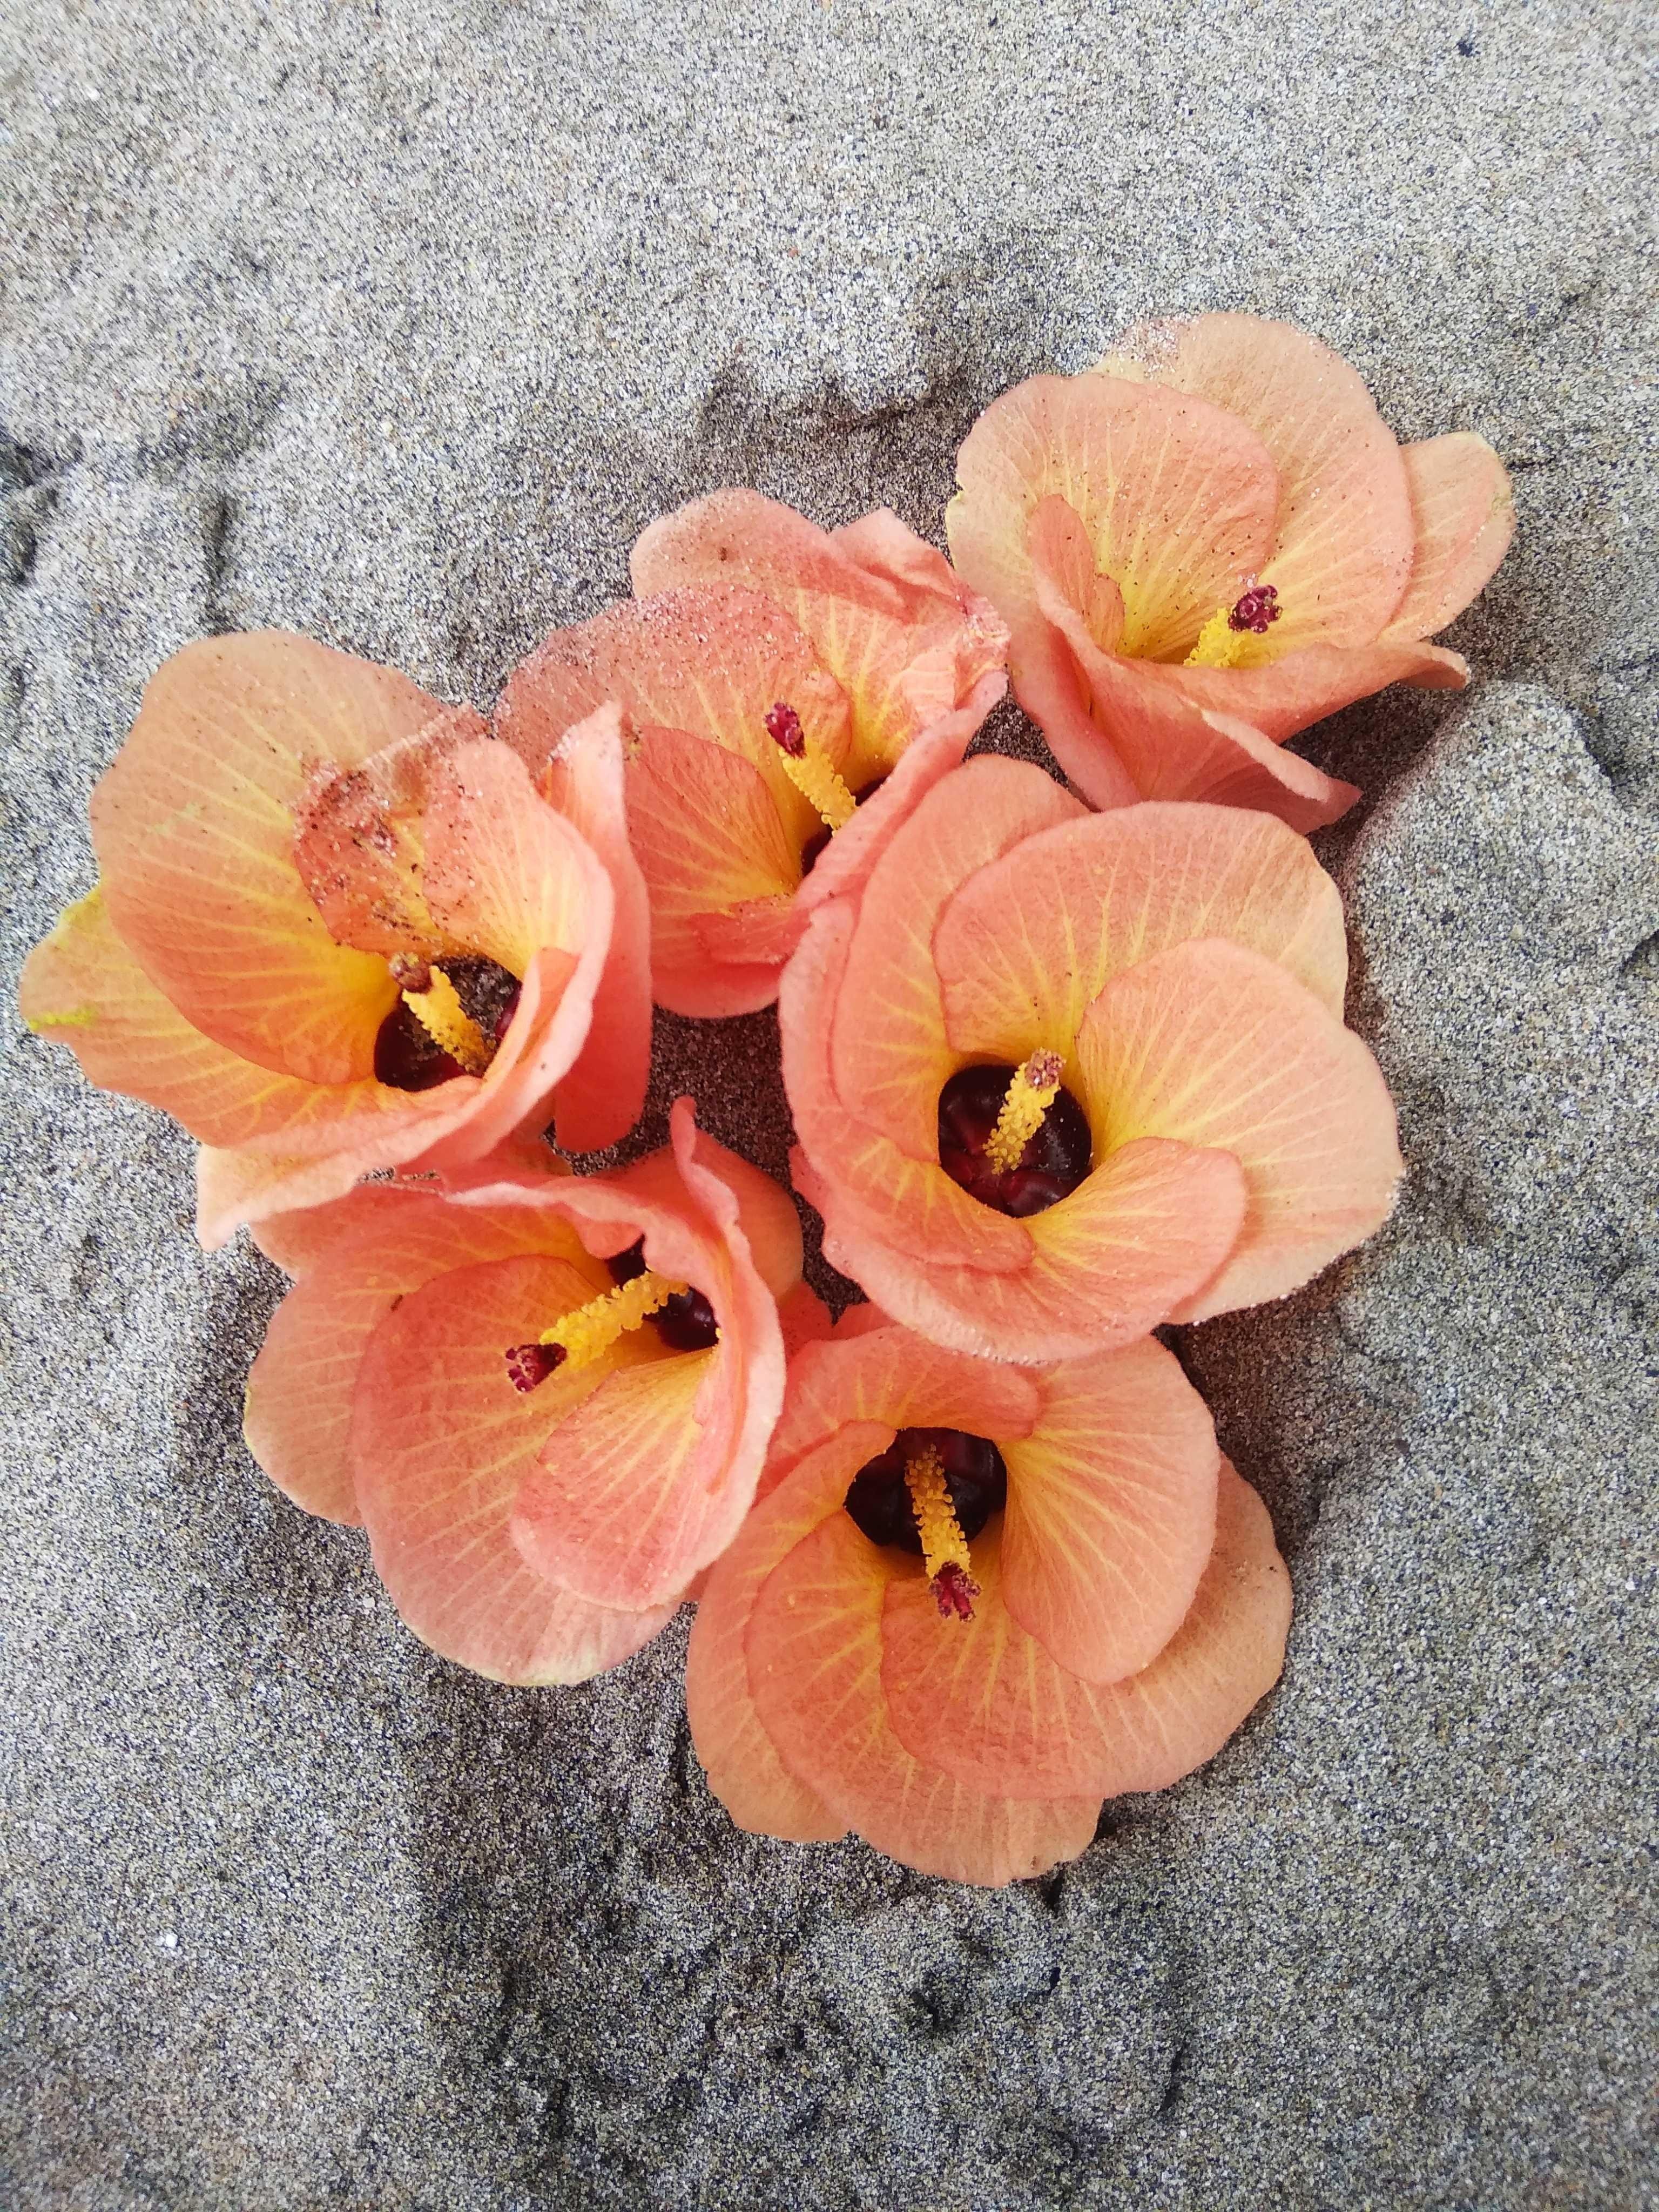 Paling Bagus 10+ Gambar Bunga Layu Cantik - Gambar Bunga Indah